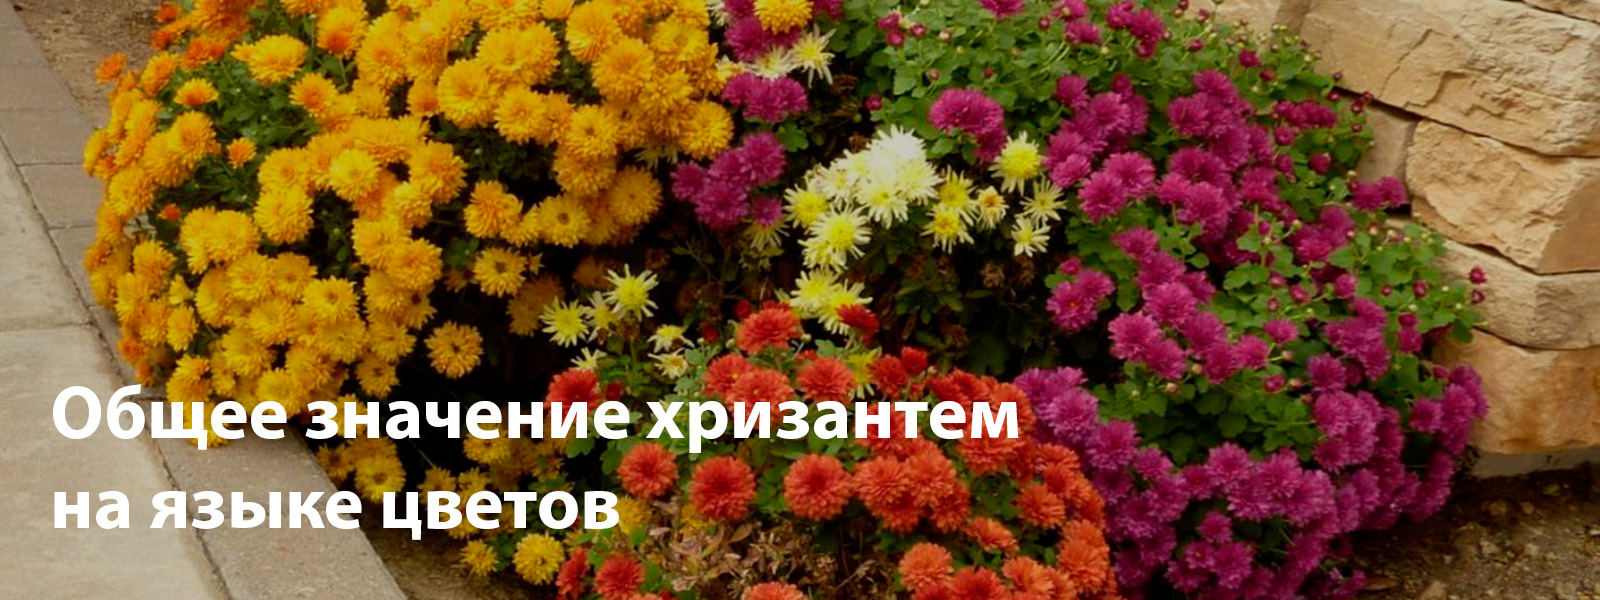 Общее значение хризантем на языке цветов